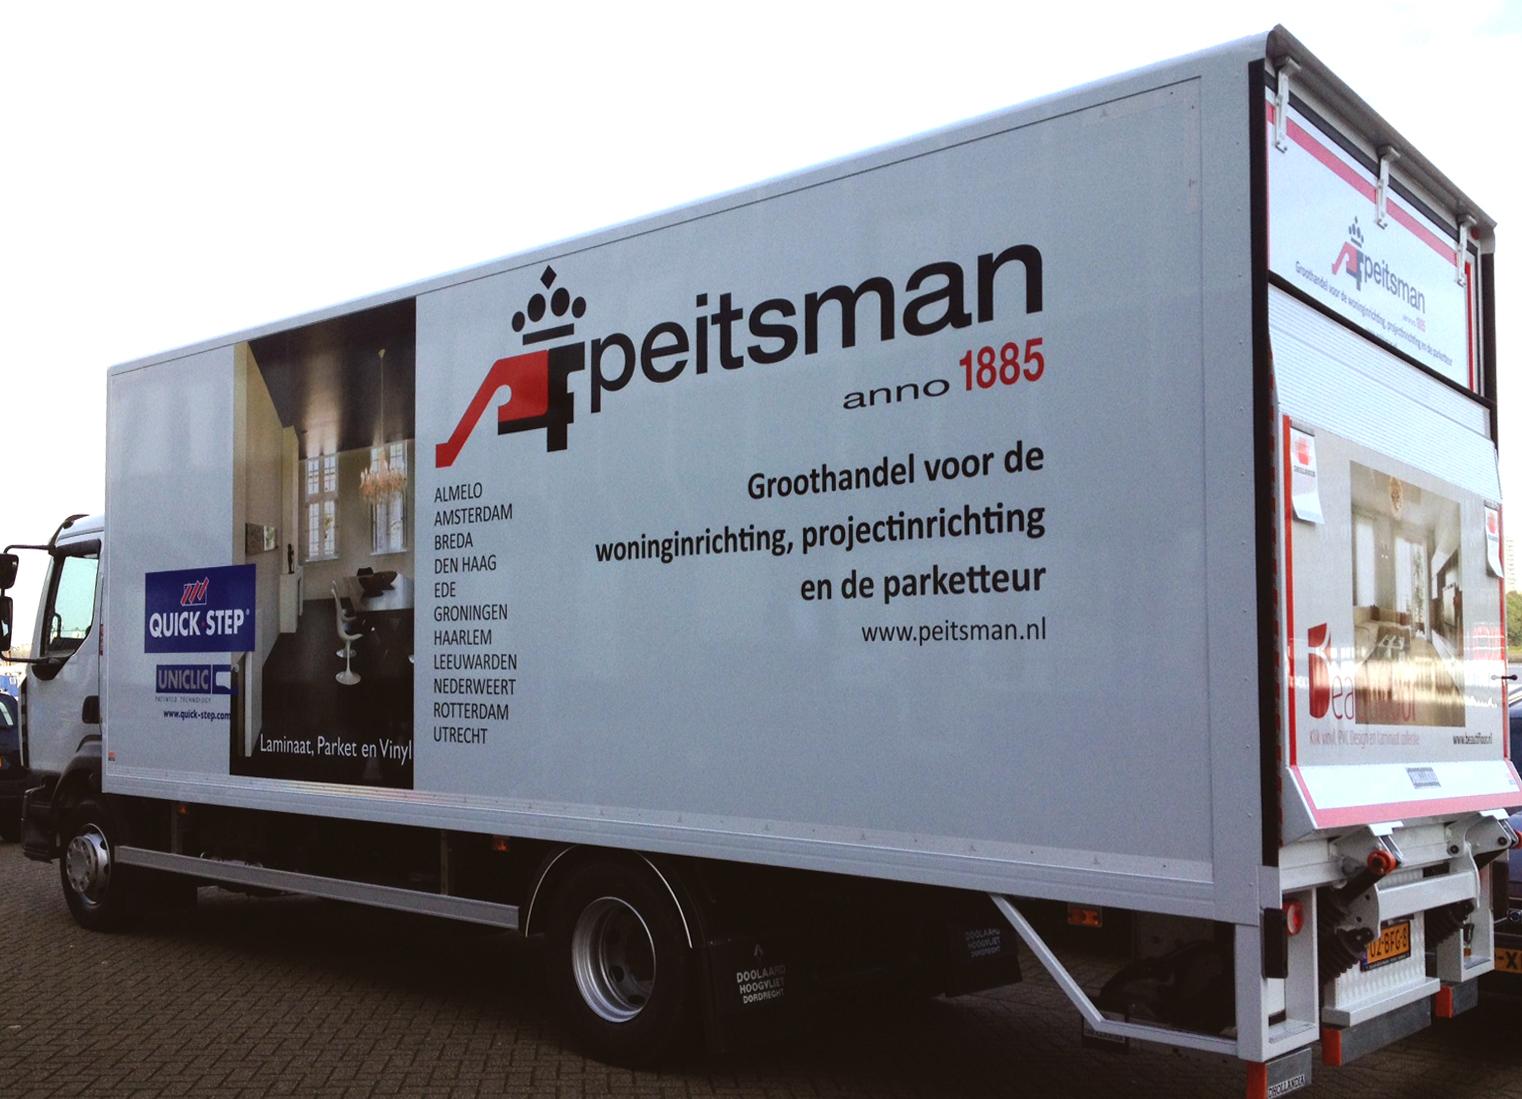 Vulkaan neef Apt Koninklijke Peitsman on Twitter: "De nieuwe vrachtwagen voor ons filiaal  Groningen is gearriveerd! http://t.co/Ogoa17zhXU http://t.co/sucVPWClCx" /  Twitter